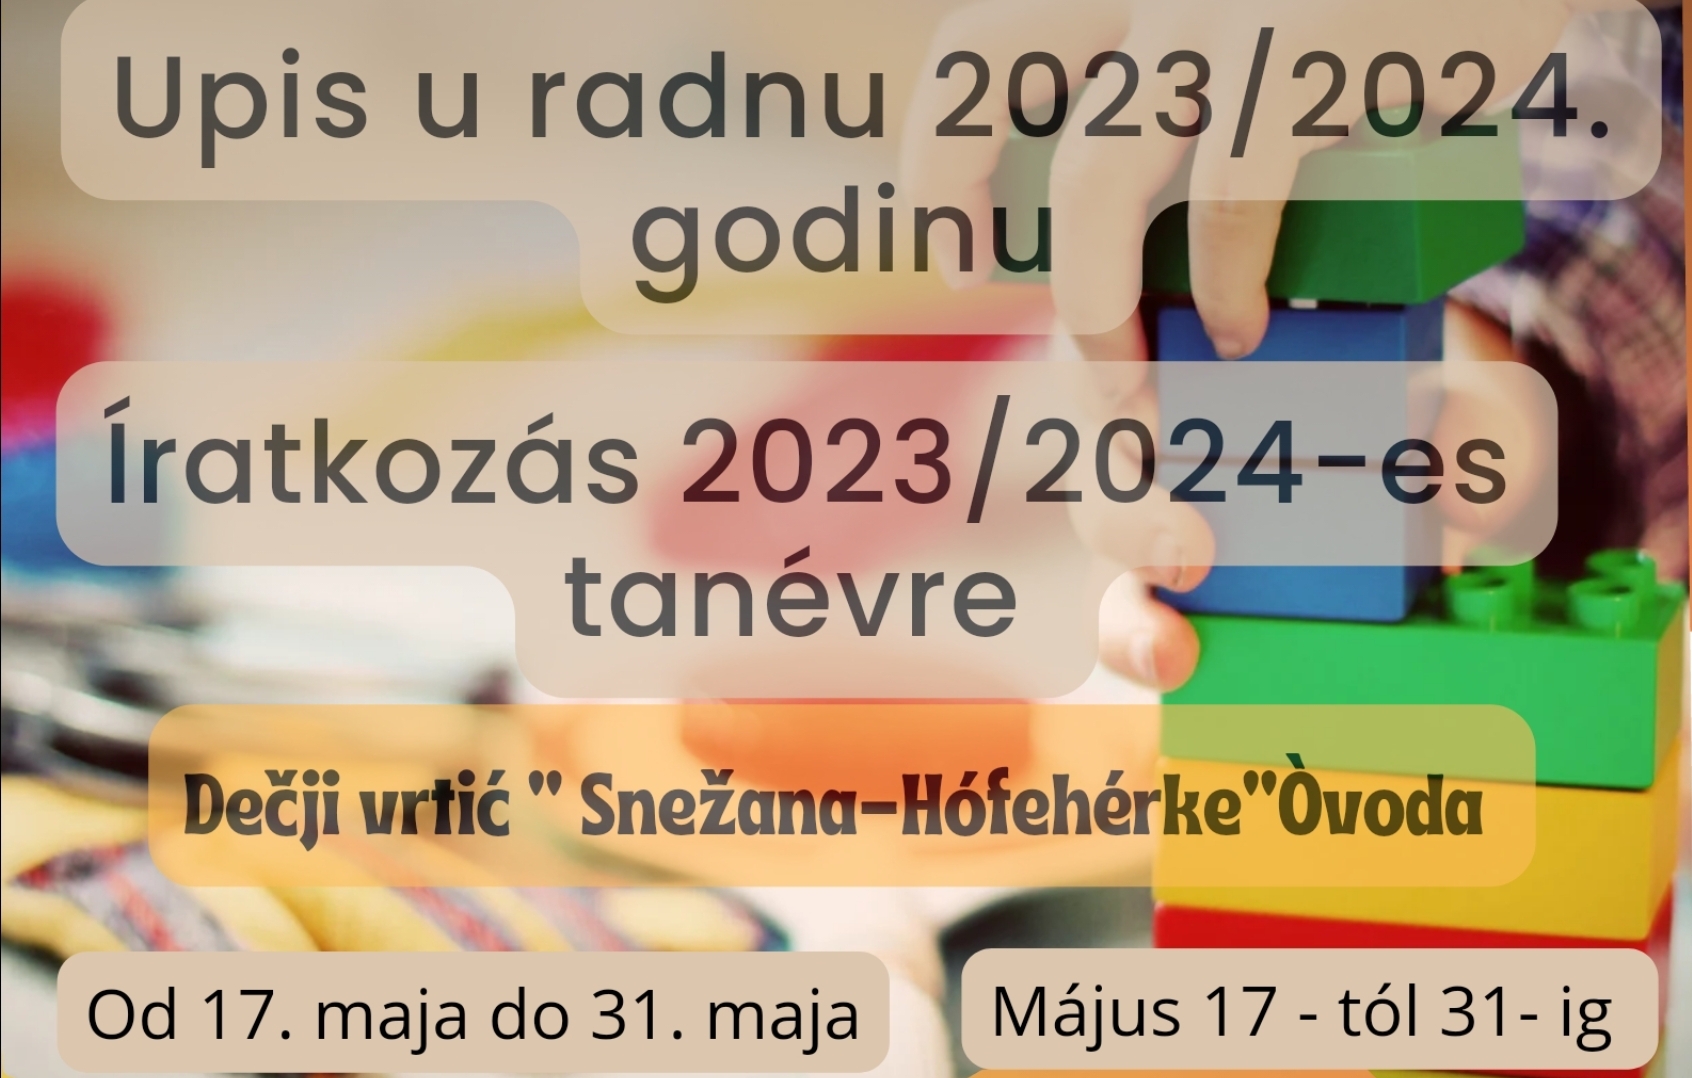 Íratkozás 2023/2024